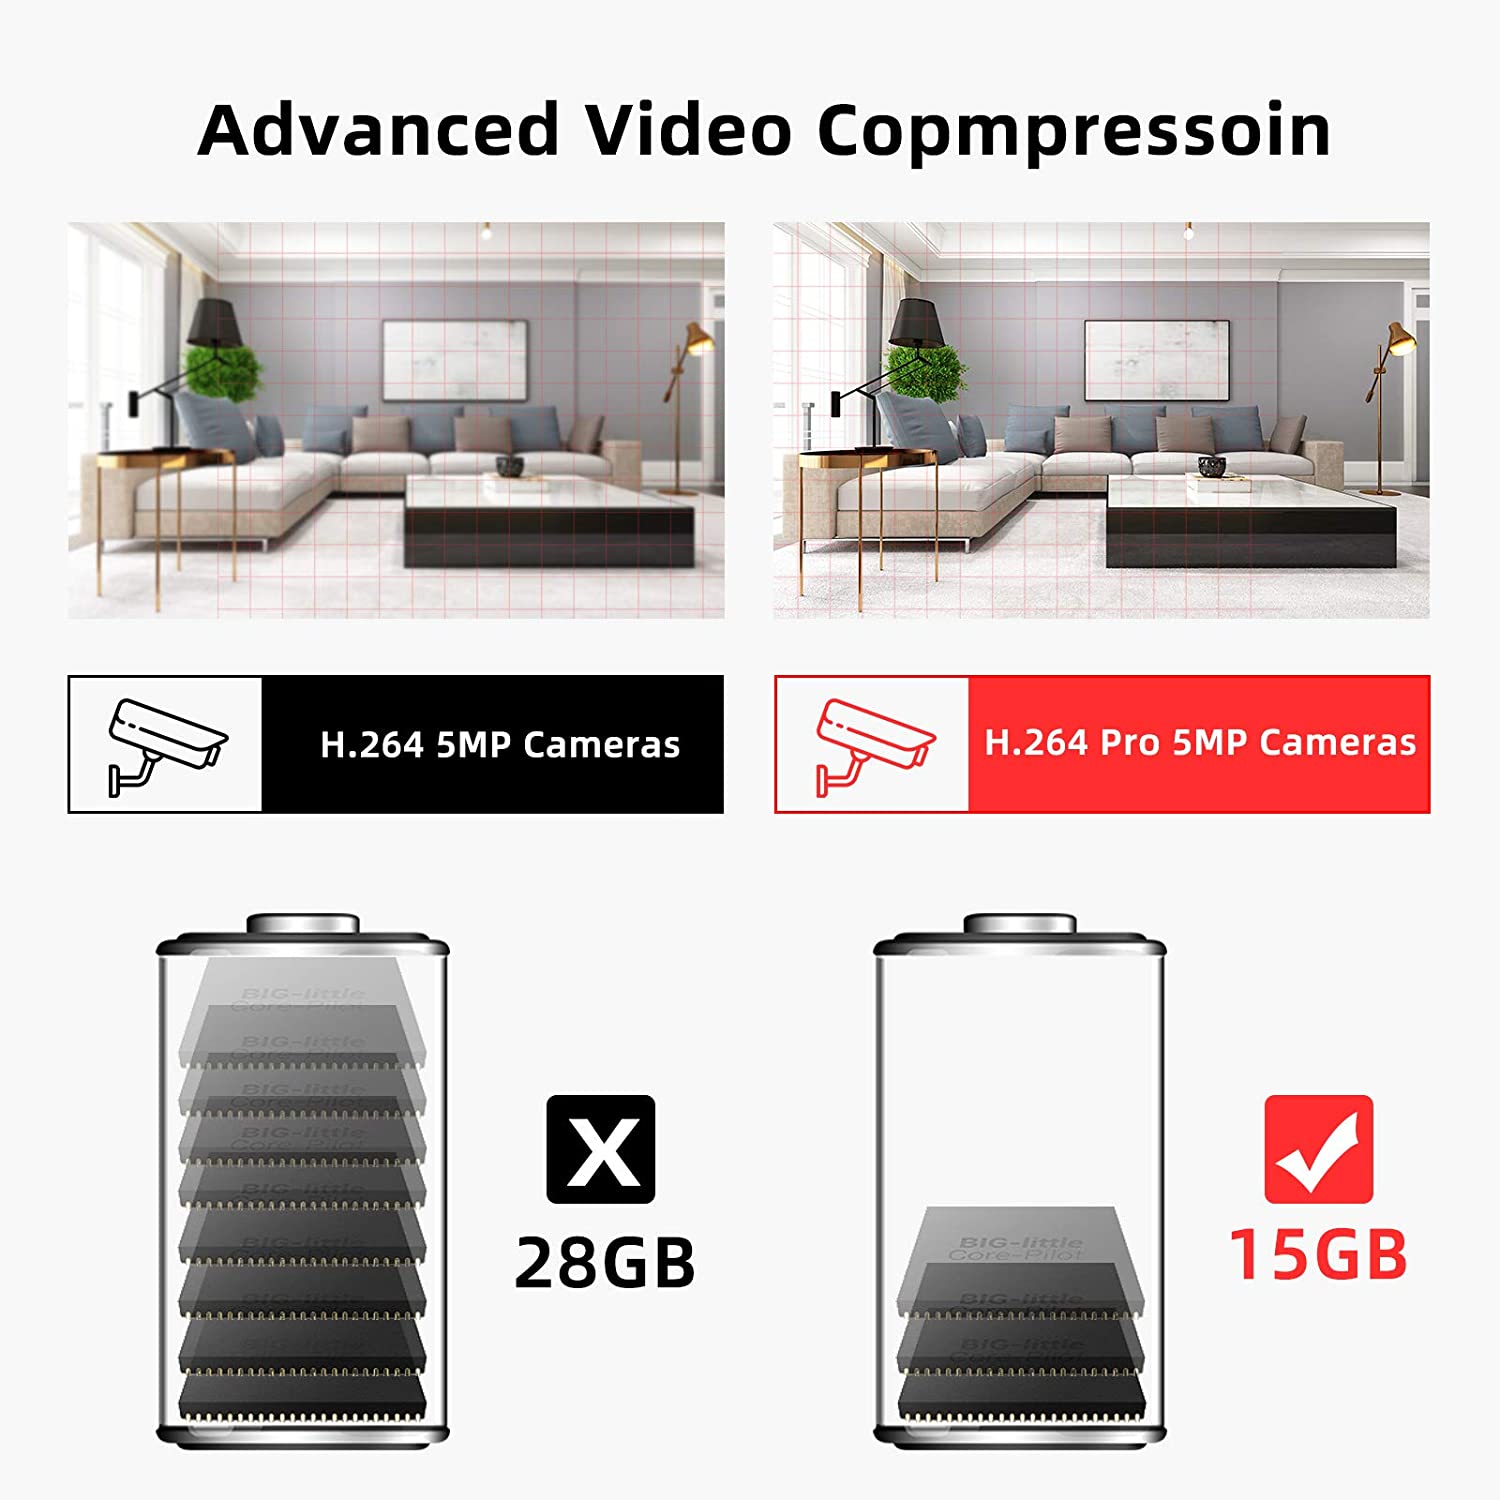 Advanced Video Copmpressoin